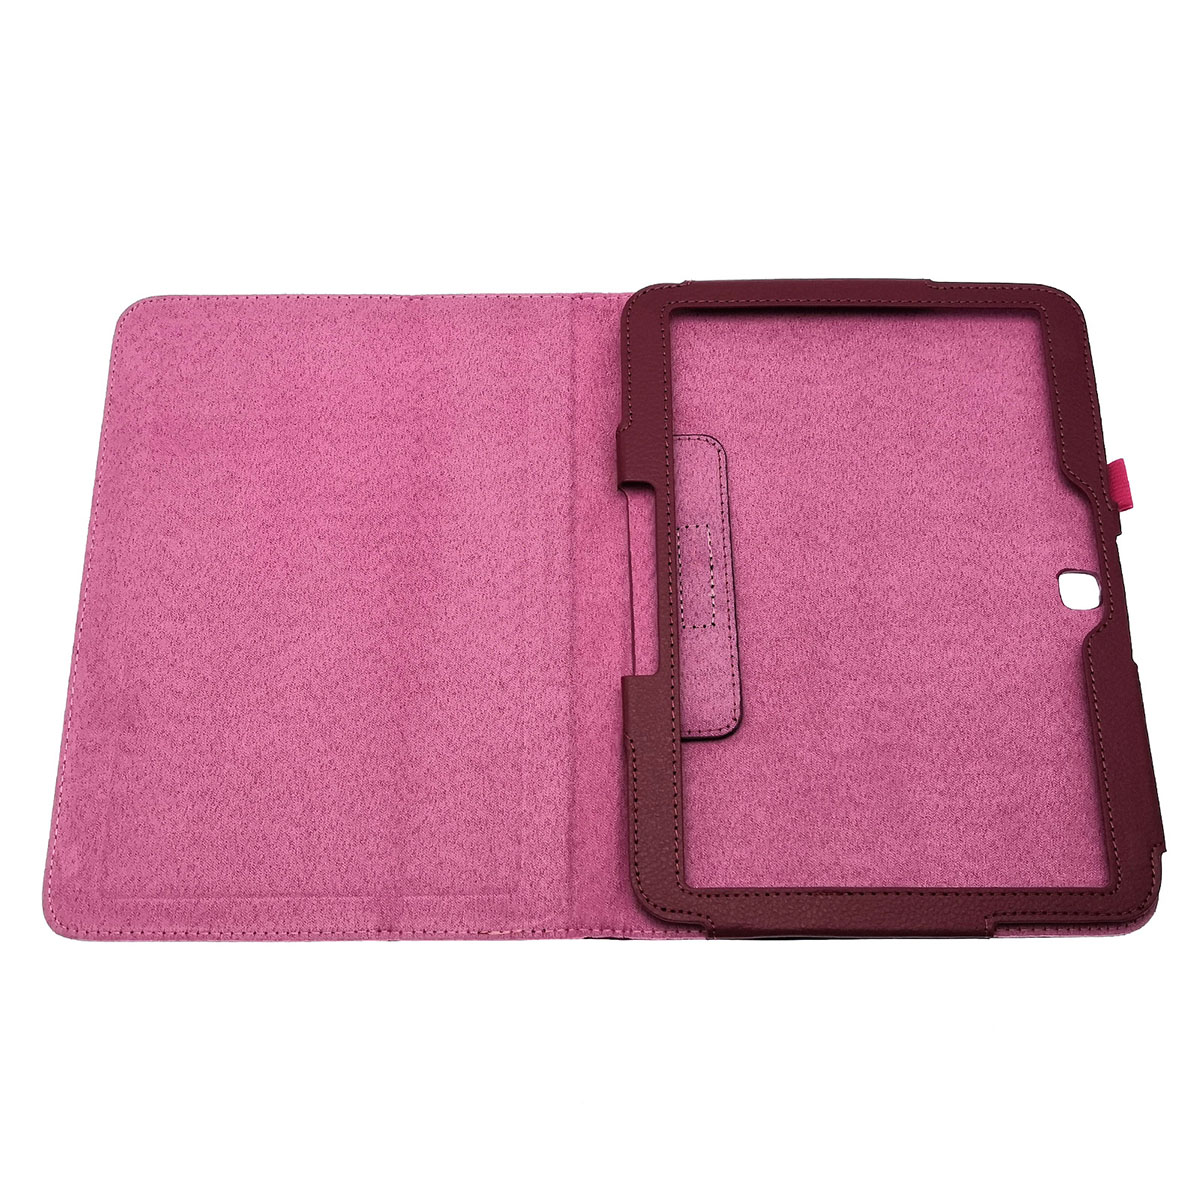 Чехол книжка для SAMSUNG Galaxy Tab 4 10.1 (SM-T530), экокожа, цвет малиновый.